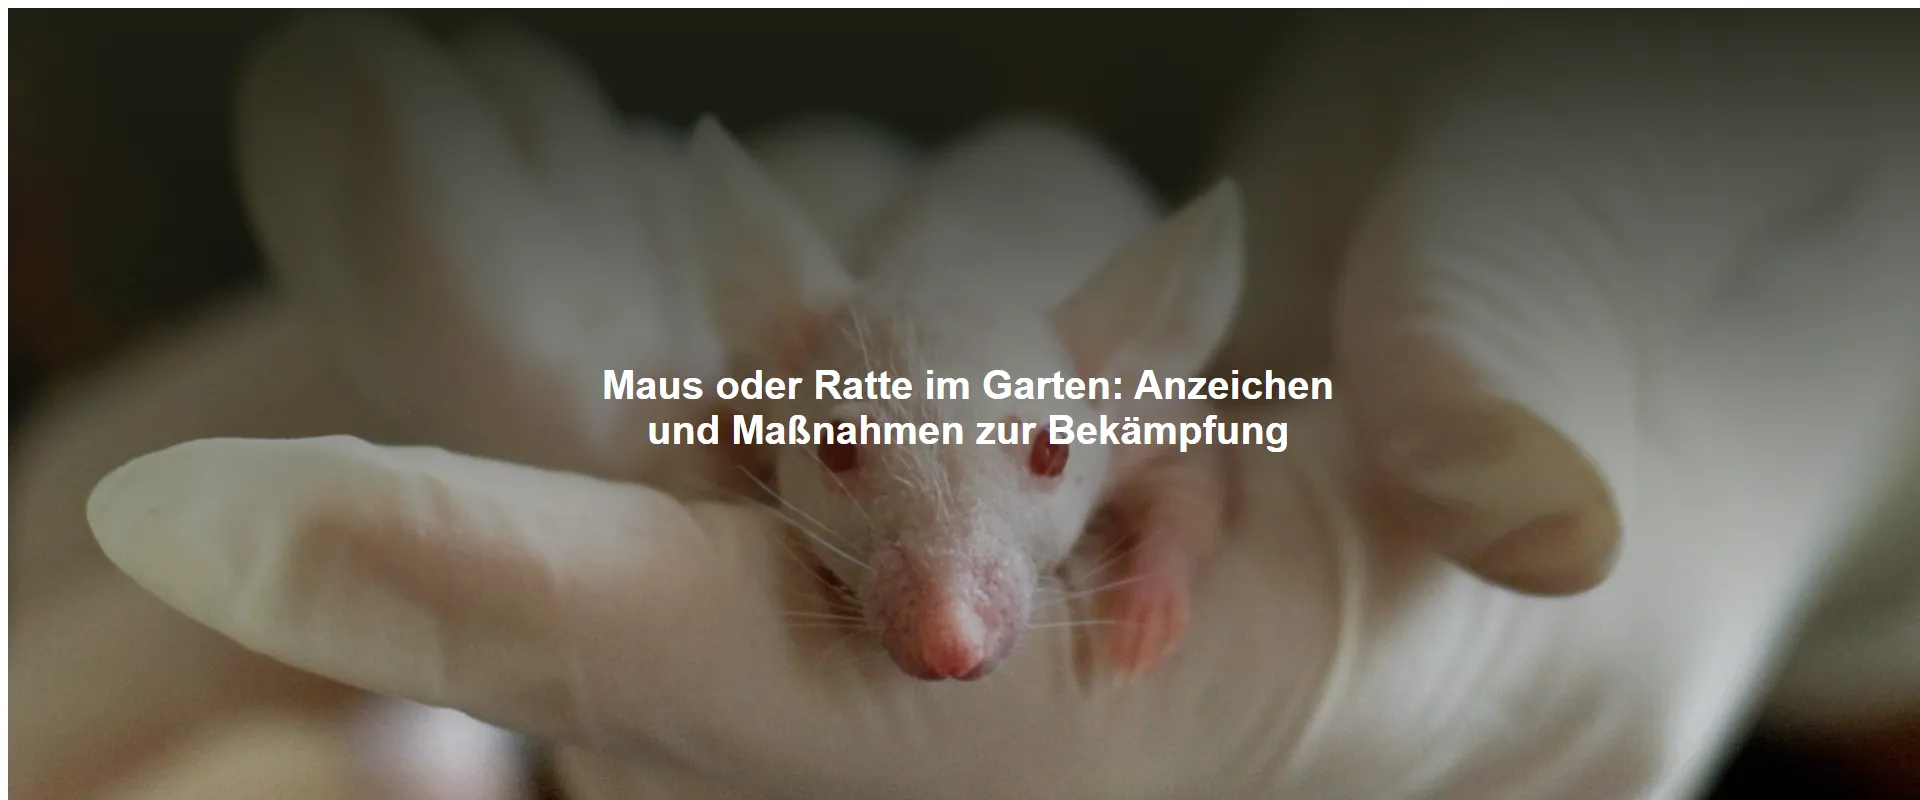 Maus oder Ratte im Garten – Anzeichen und Maßnahmen zur Bekämpfung